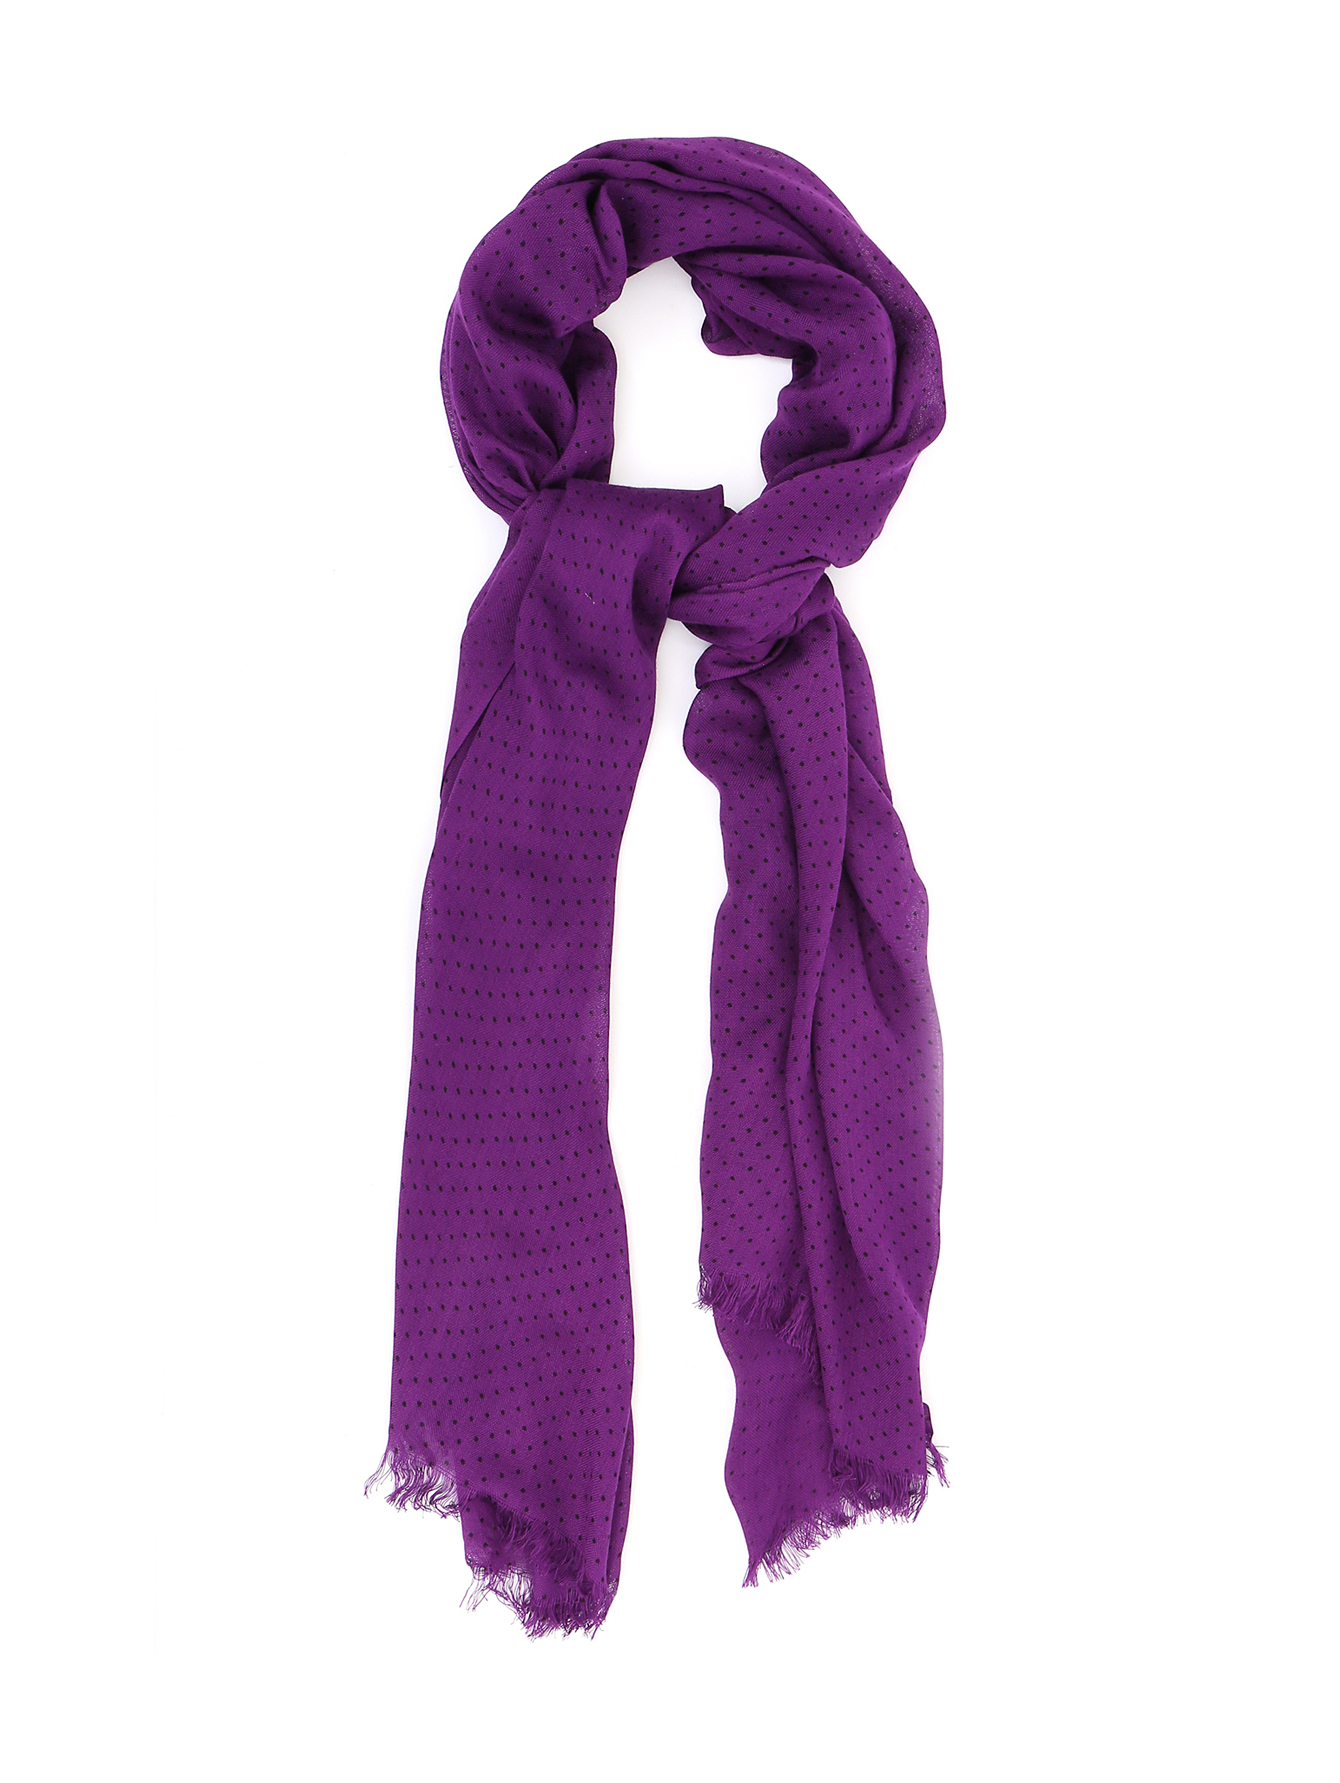 Фиолетовый шарф